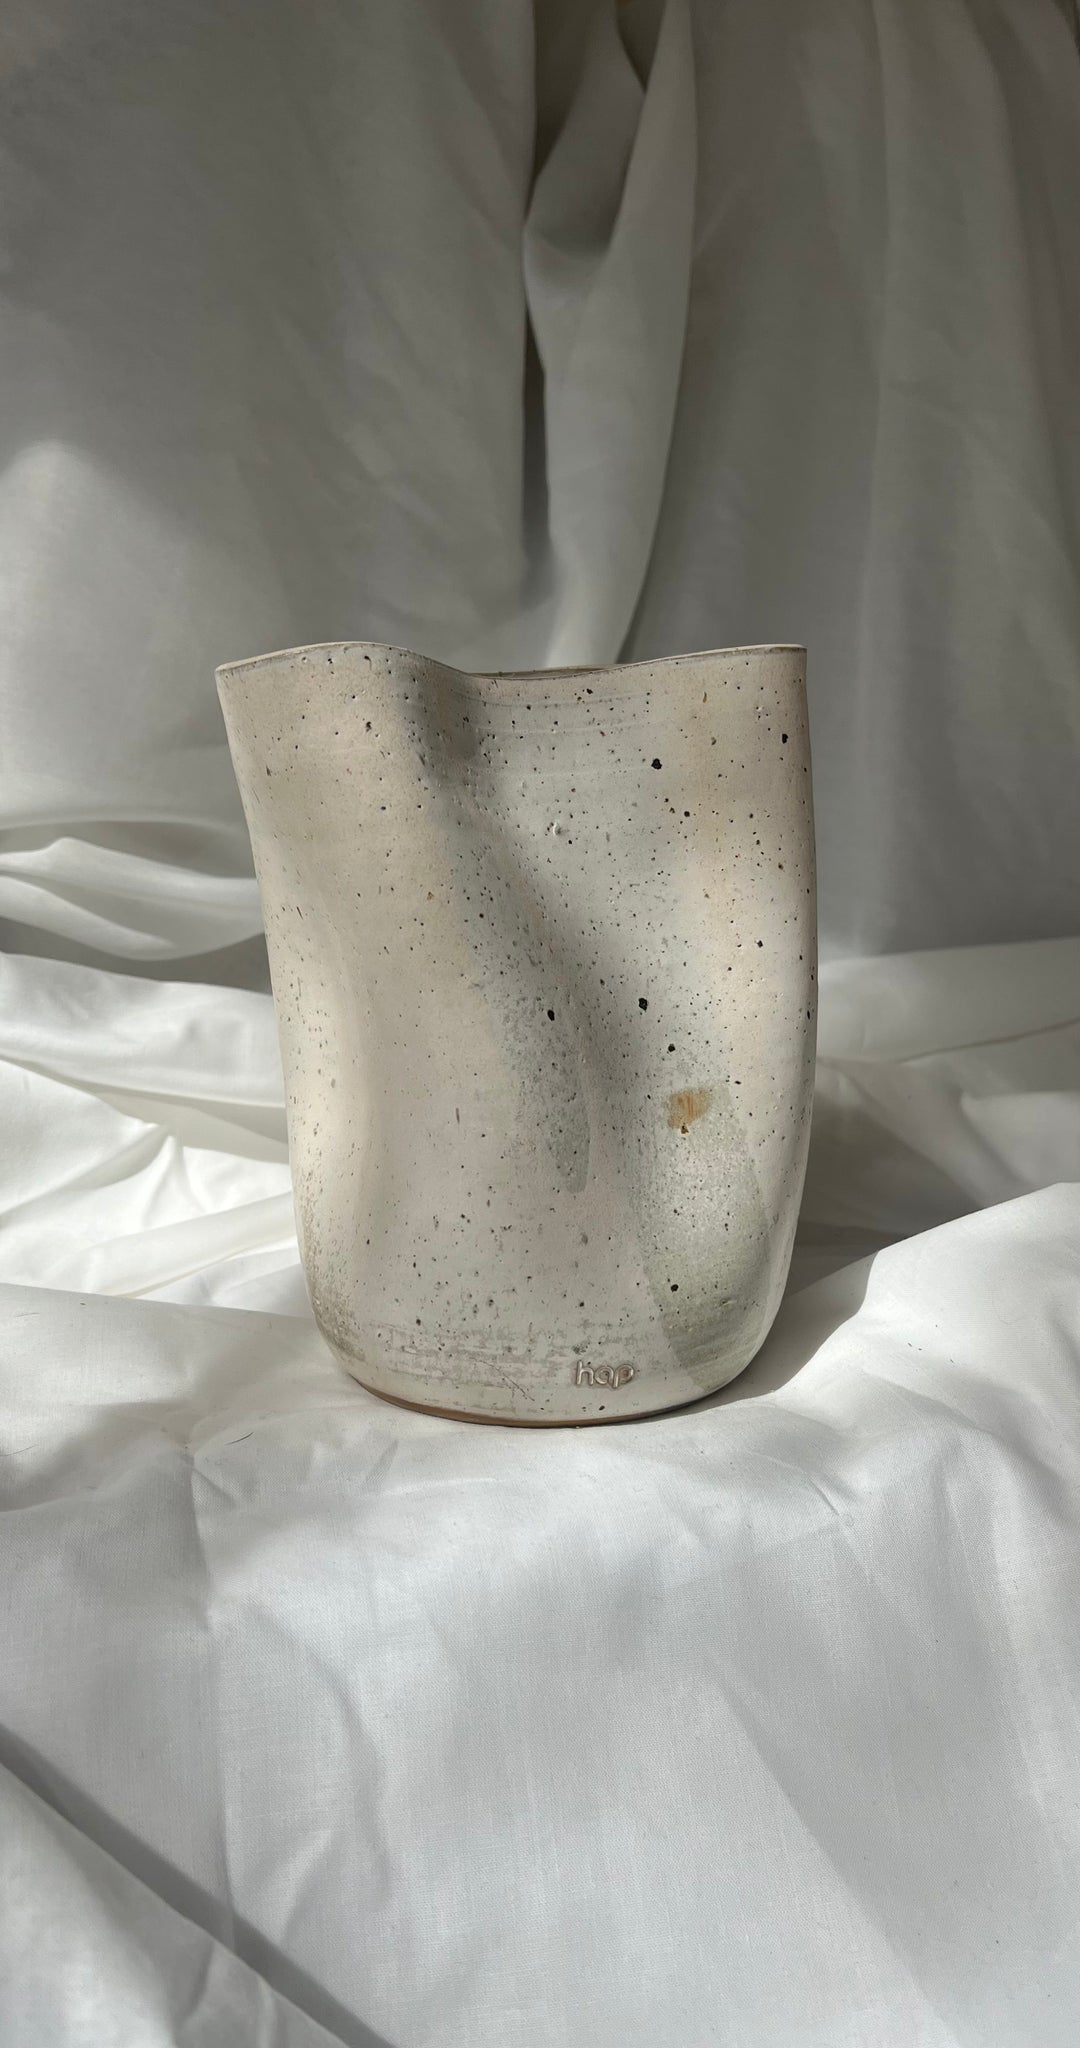 Deformed vase in beige by hap